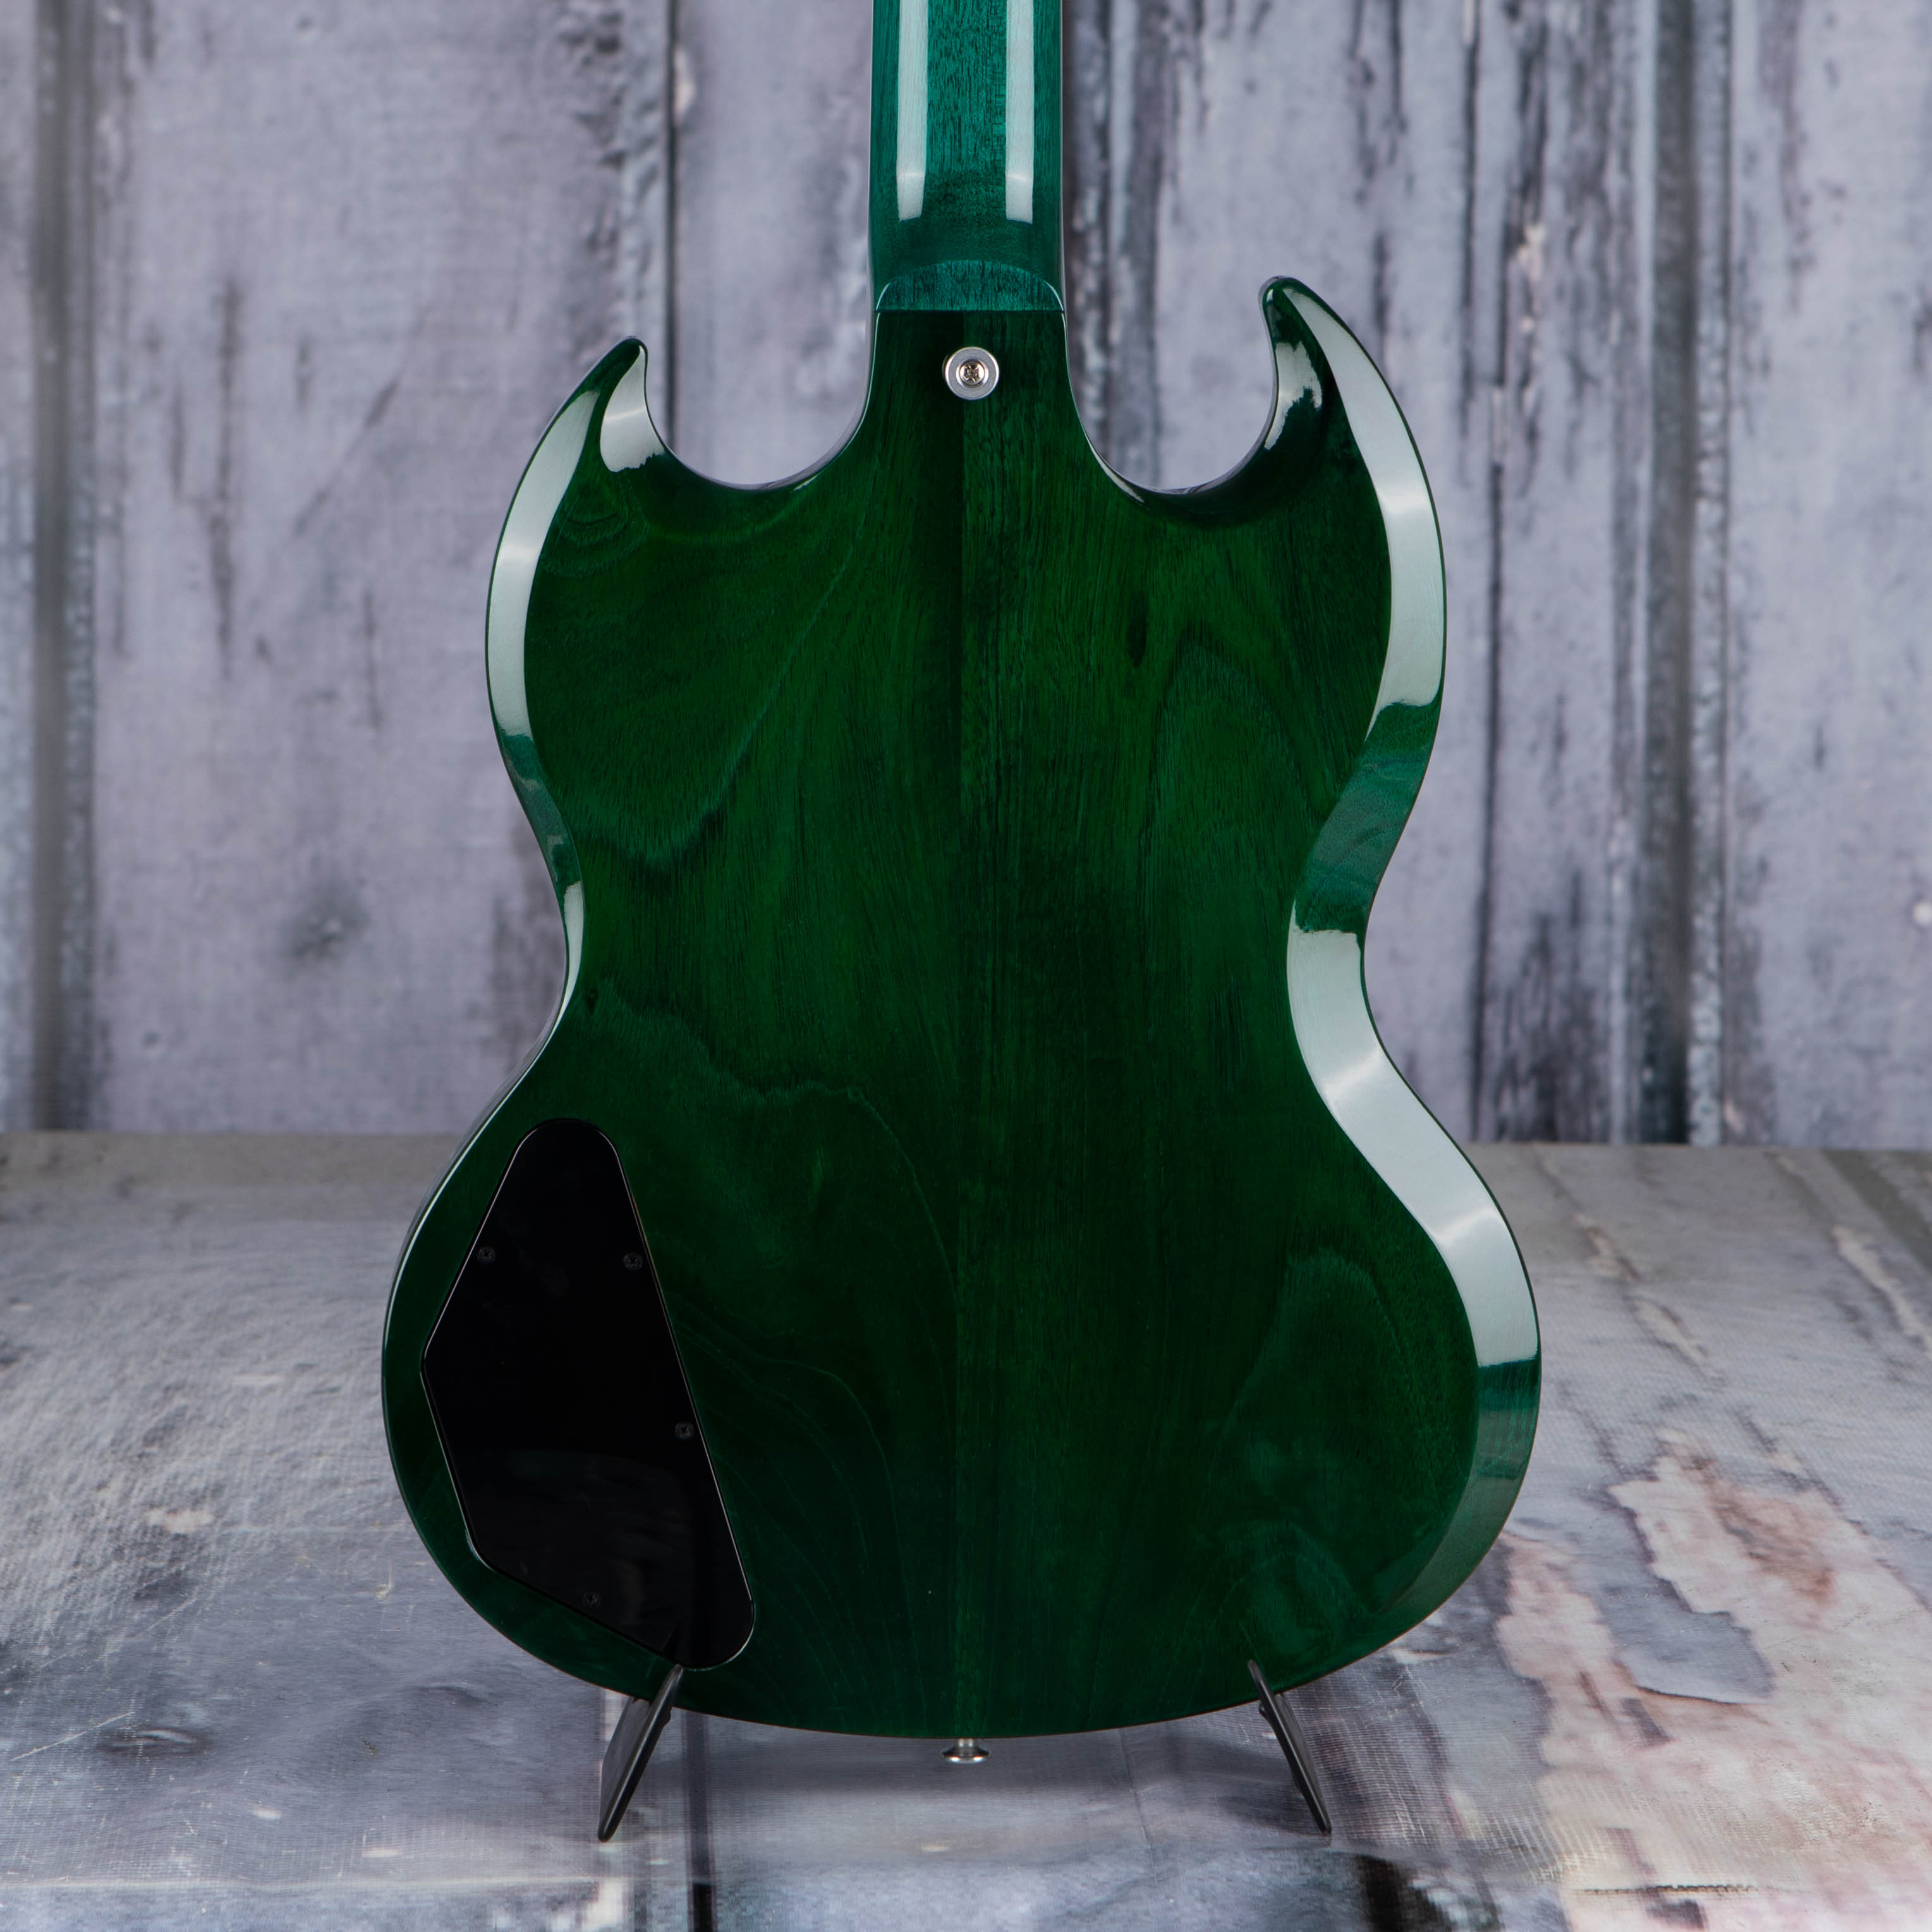 Gibson USA SG Standard Electric Guitar, Translucent Teal, back closeup